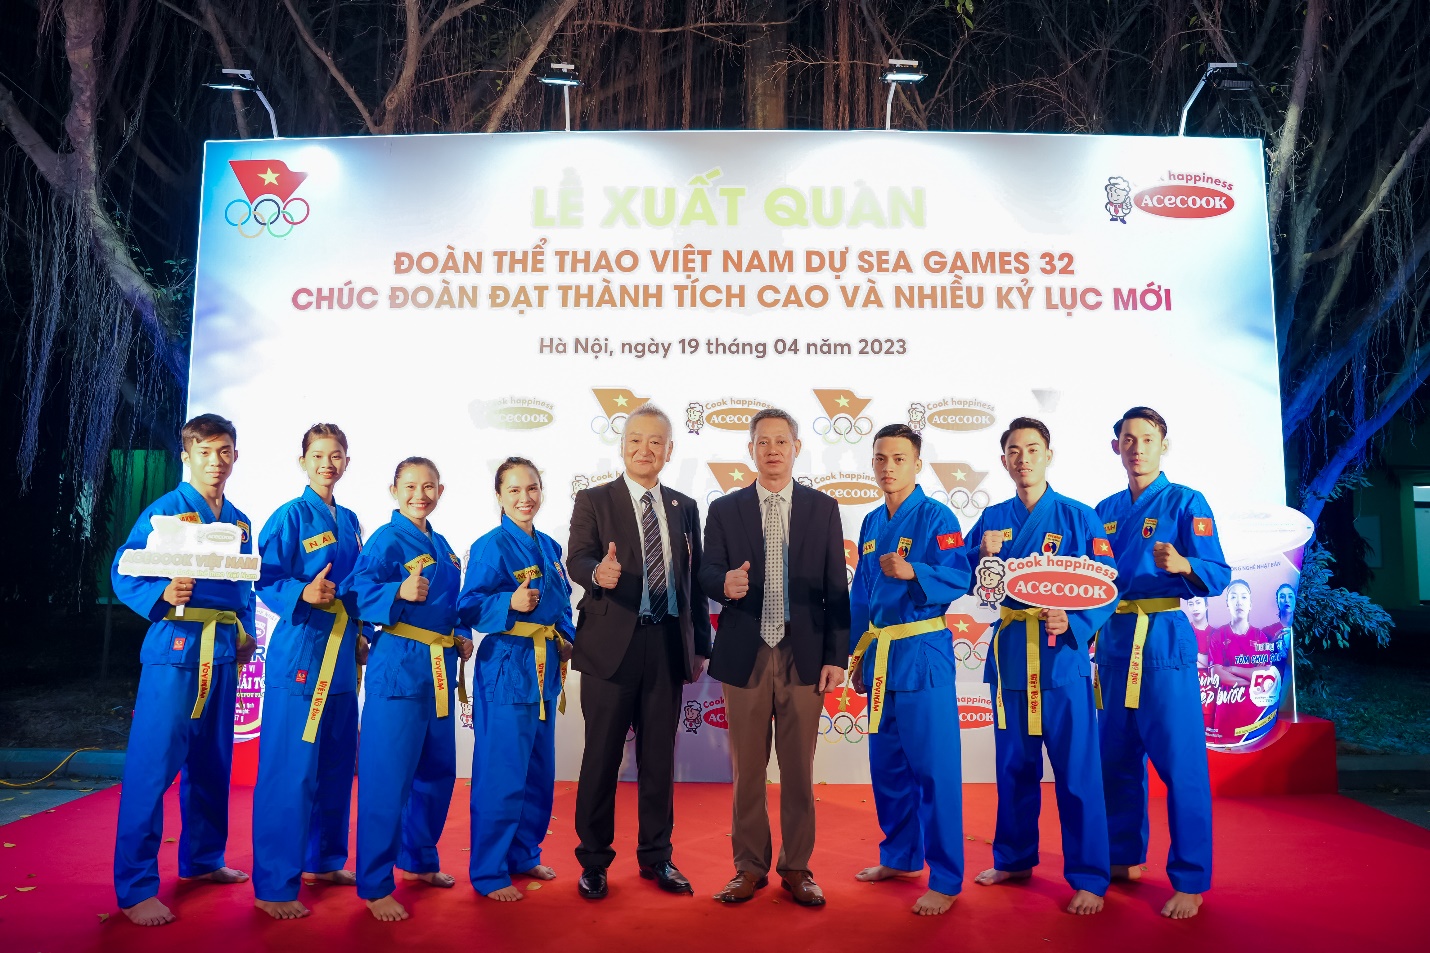 ACECOOK Việt Nam đồng hành cùng Đoàn thể thao Việt Nam dự SEA GAMES 32 - Ảnh 5.